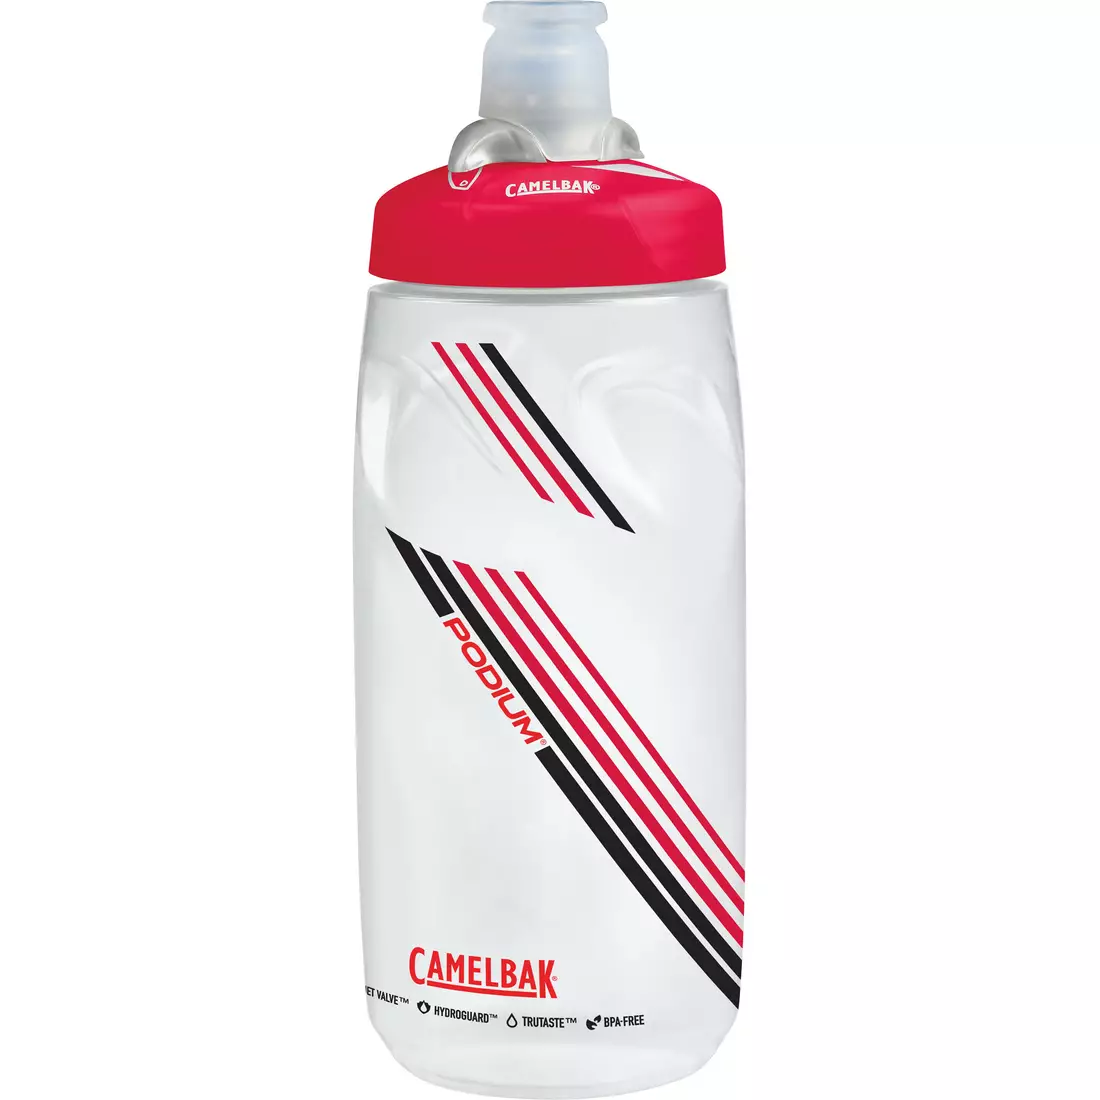 Camelbak SS17 Podium Fahrradwasserflasche 21oz / 620 ml Clear Red